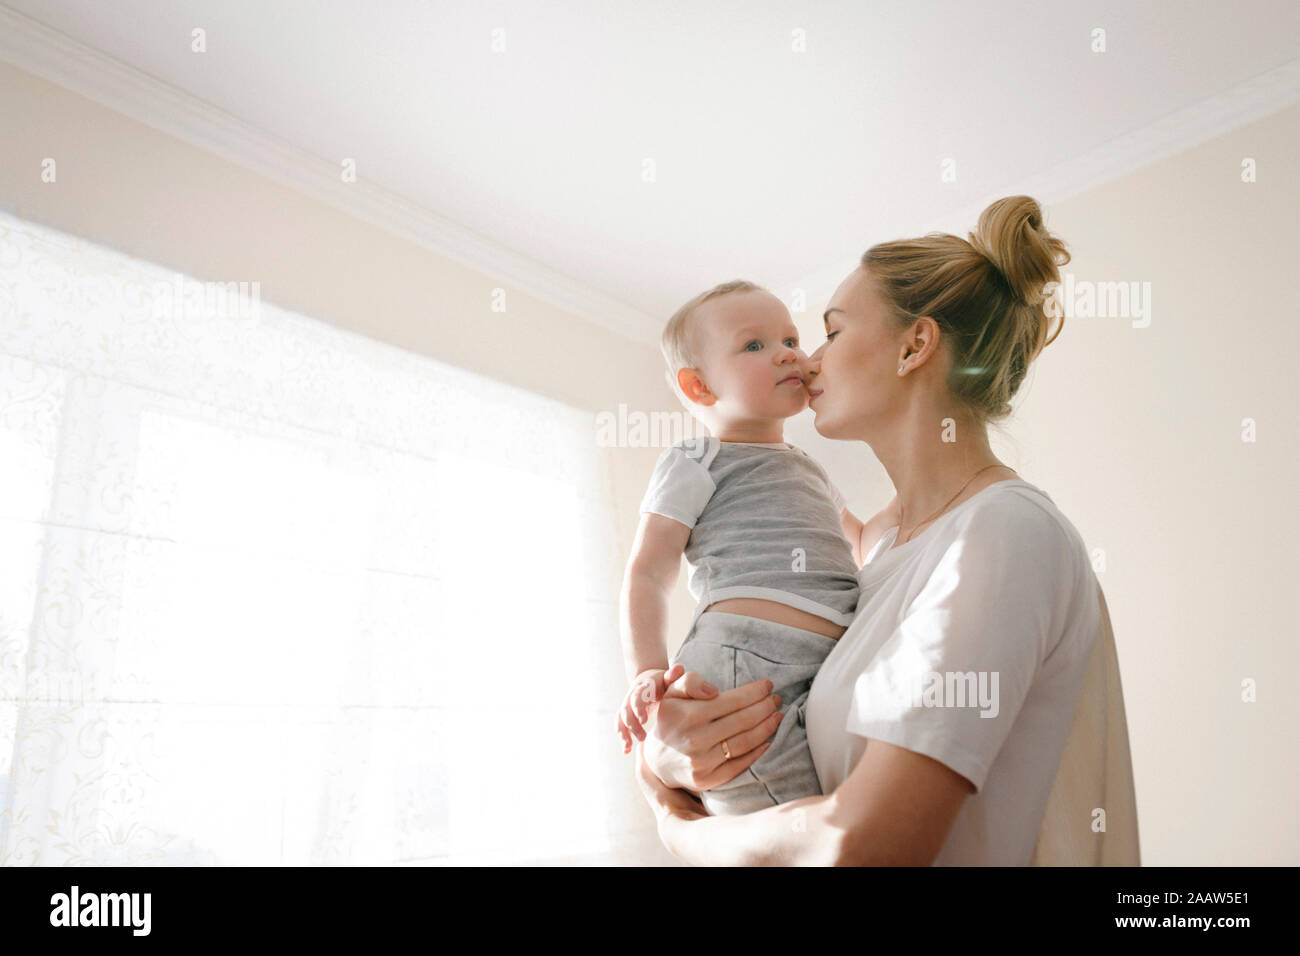 La madre abrazando a su pequeño muchacho cerca de la ventana Foto de stock